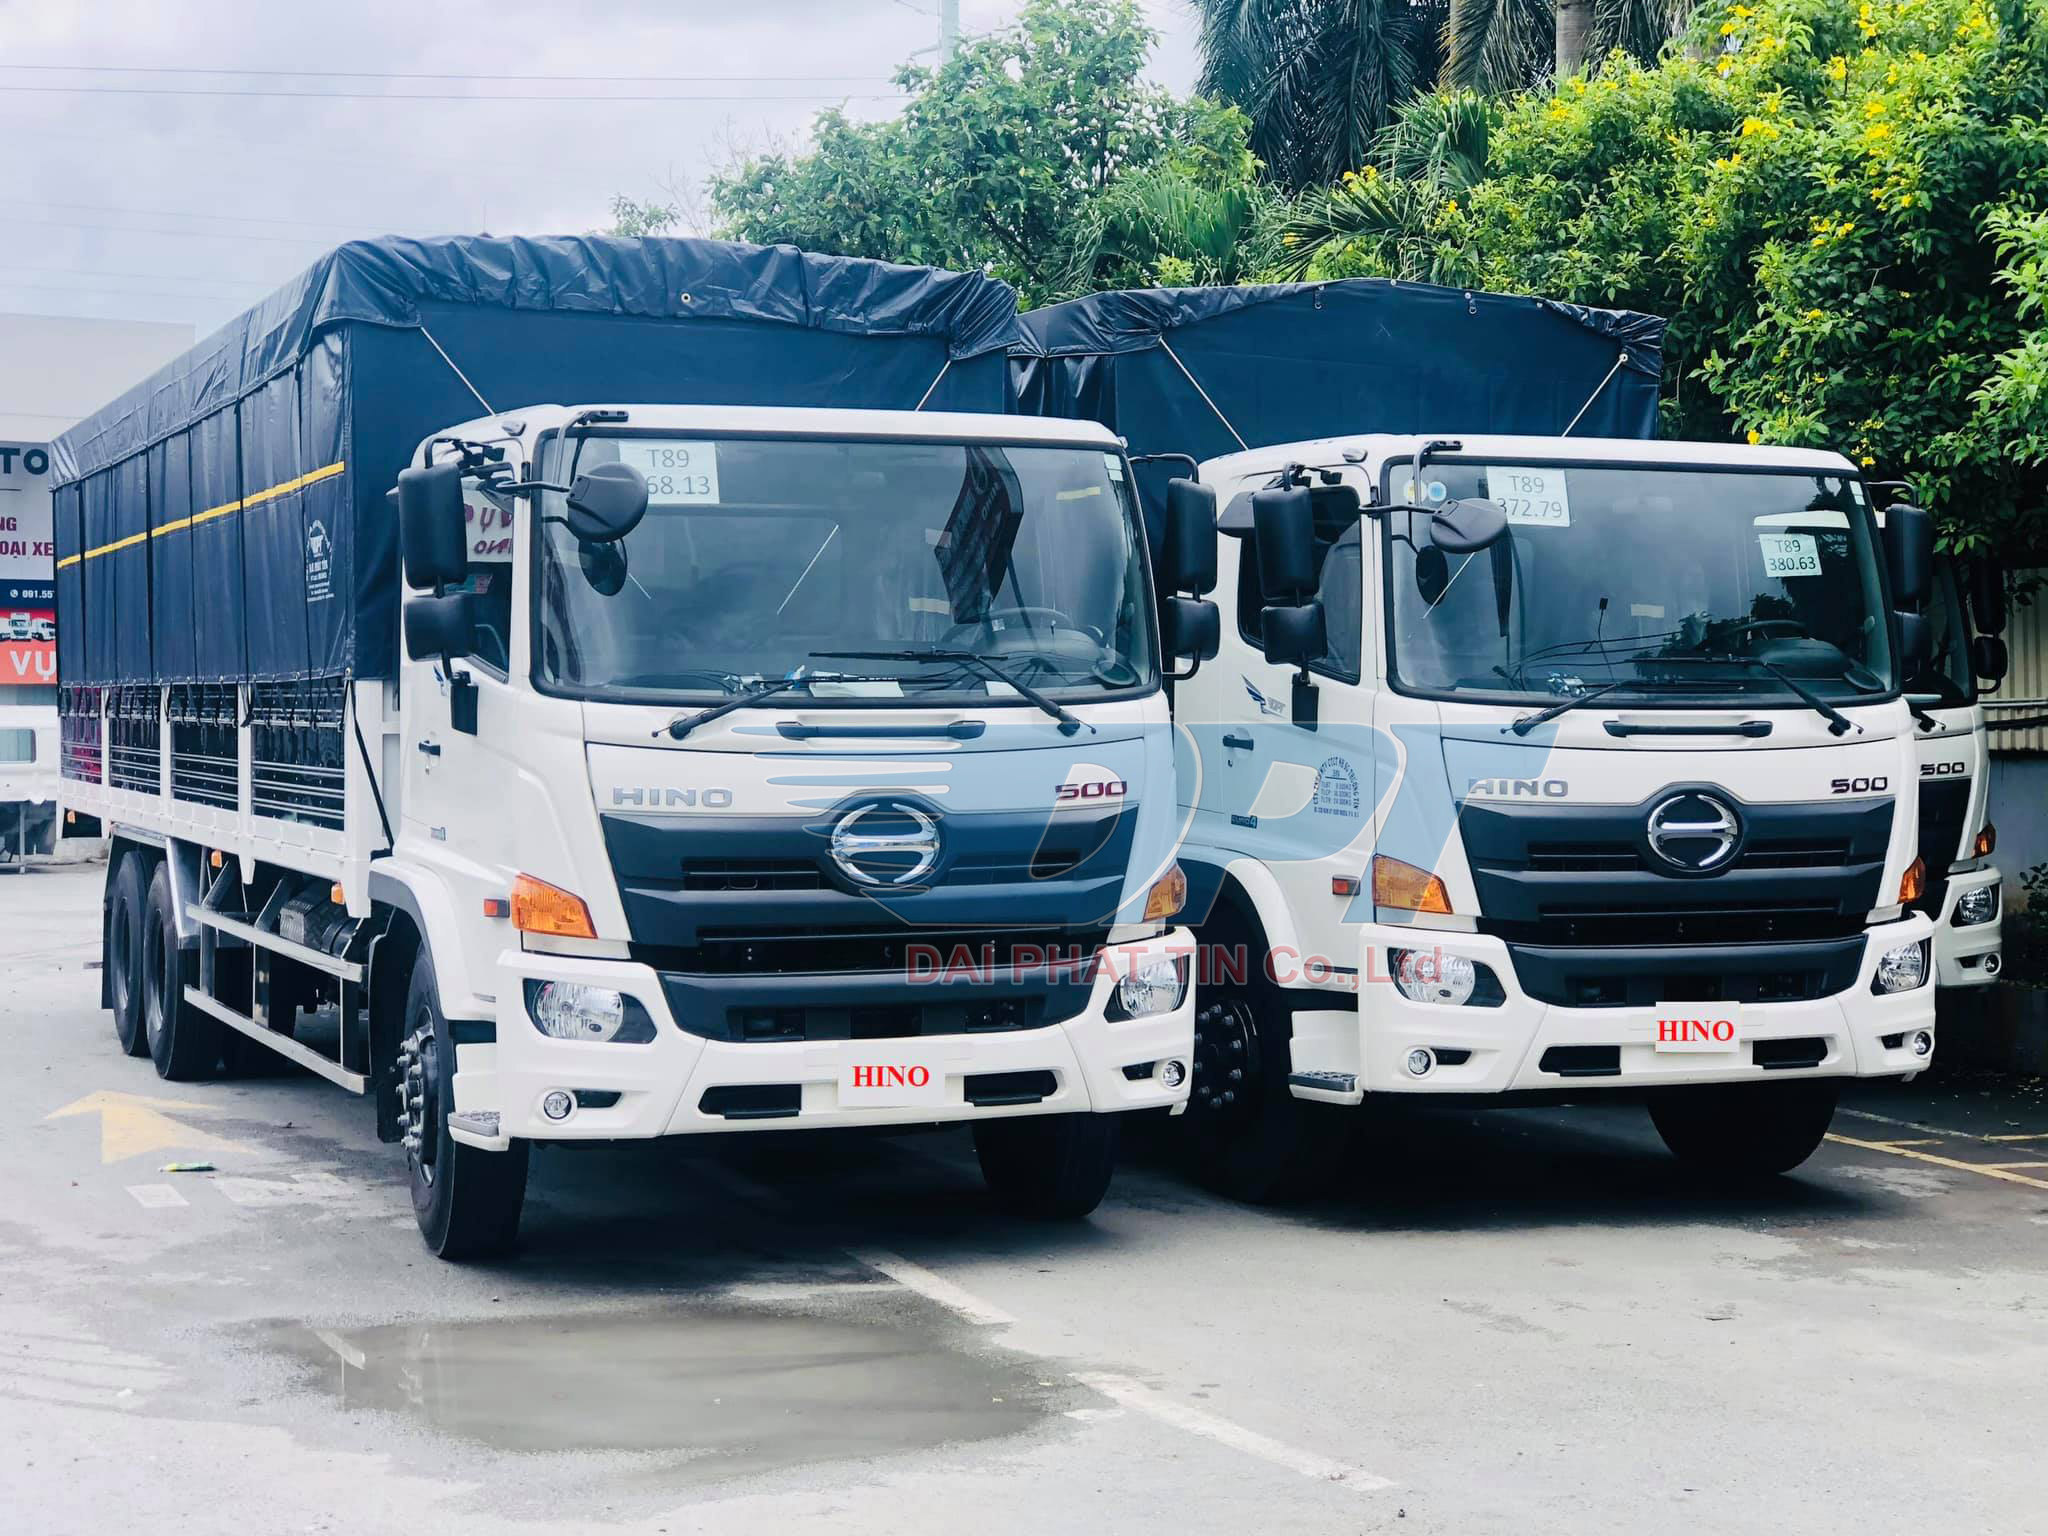 Chất lượng đảm bảo khi đến với đại lý xe tải Hino của chúng tôi. Chúng tôi cam kết cung cấp đầy đủ các dòng xe tải Hino chính hãng với giá cả cạnh tranh nhất. Hãy ghé thăm đại lý của chúng tôi để tận hưởng dịch vụ tốt nhất.